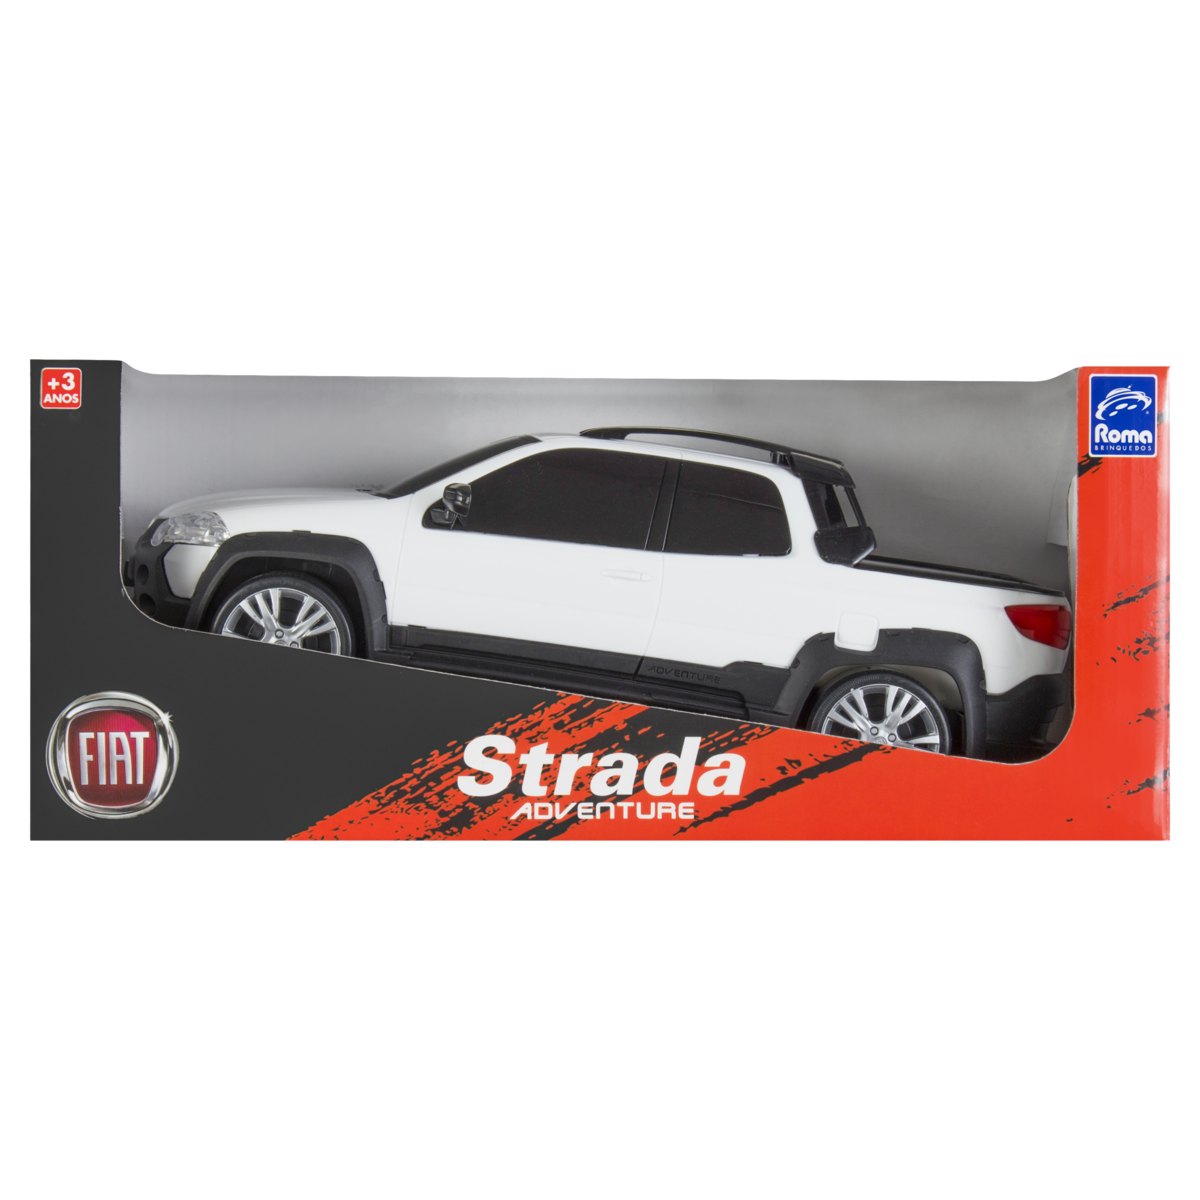 7896965218603 - FIAT STRADA ADVENTURE ROMA BRINQUEDOS